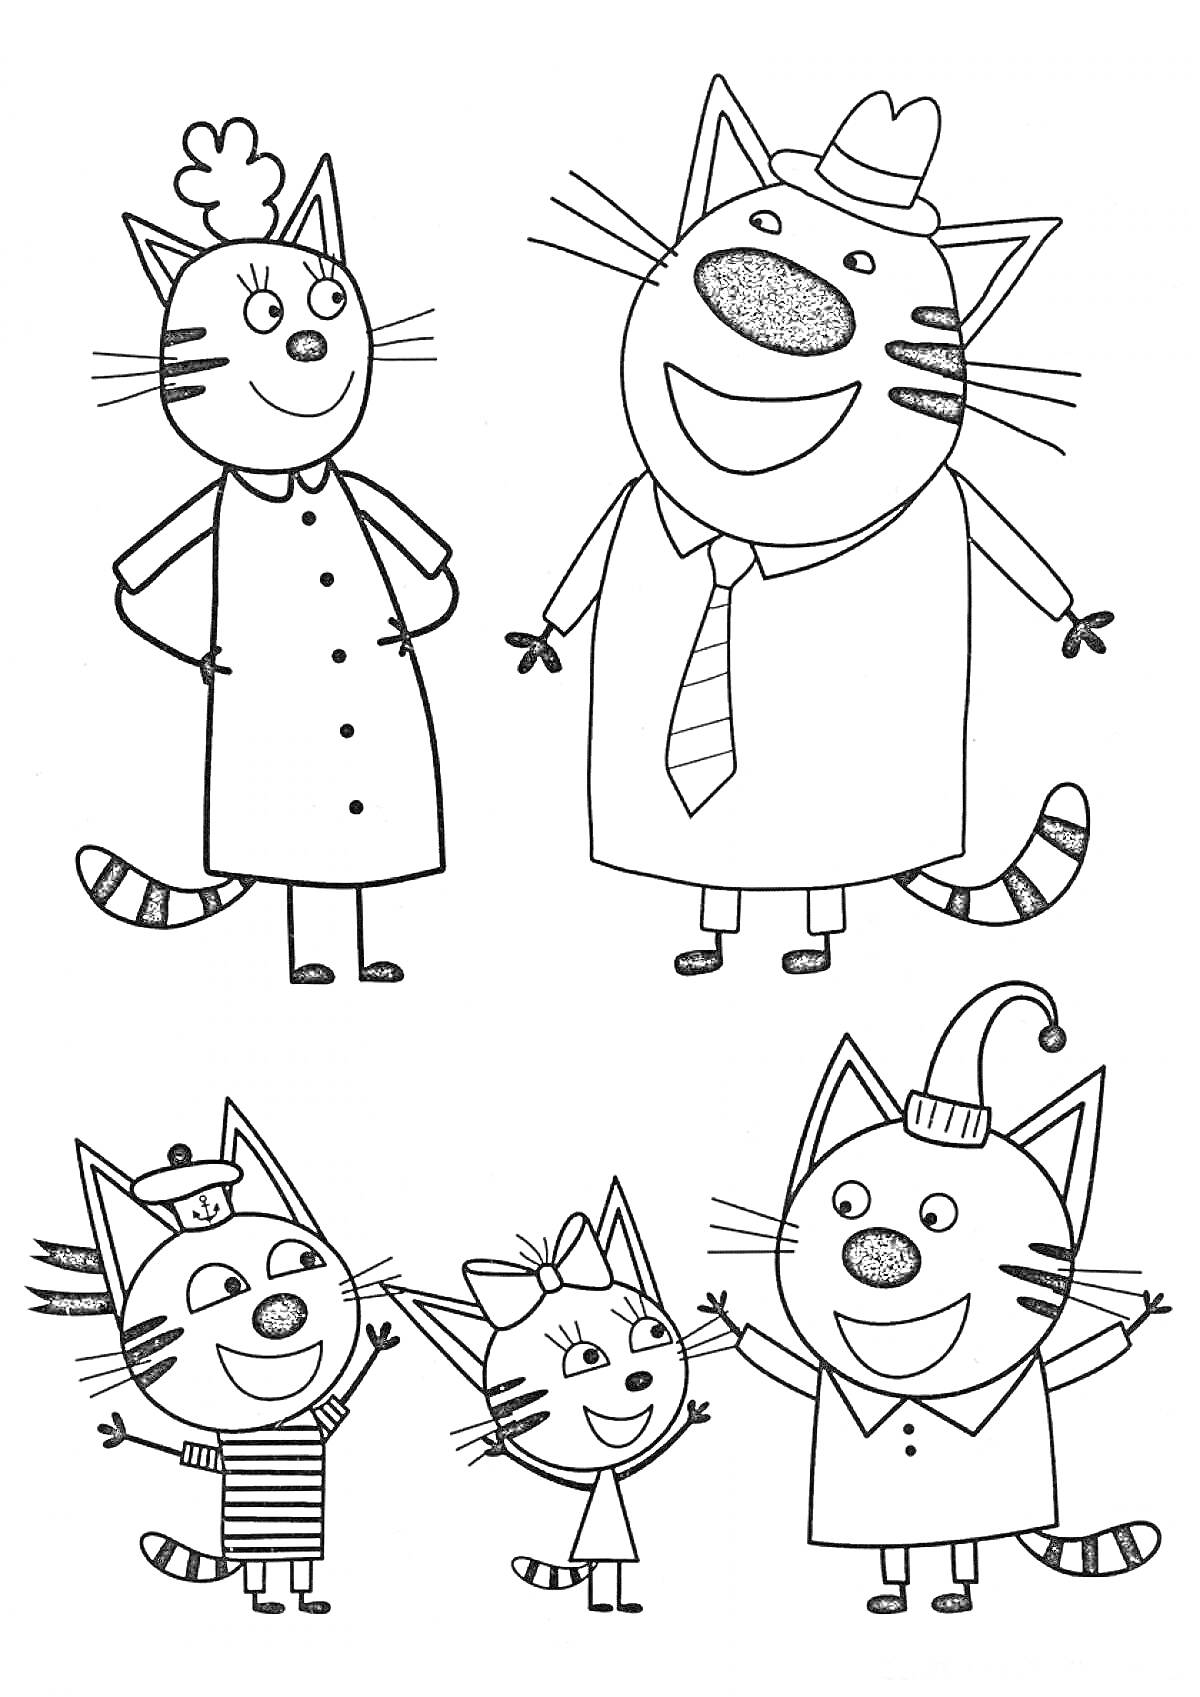 Три Кота: семья котов, включая маму, папу и трёх котят в разных костюмах (один в полосатой футболке и шапке, второй с бантиком, третий с шапкой)